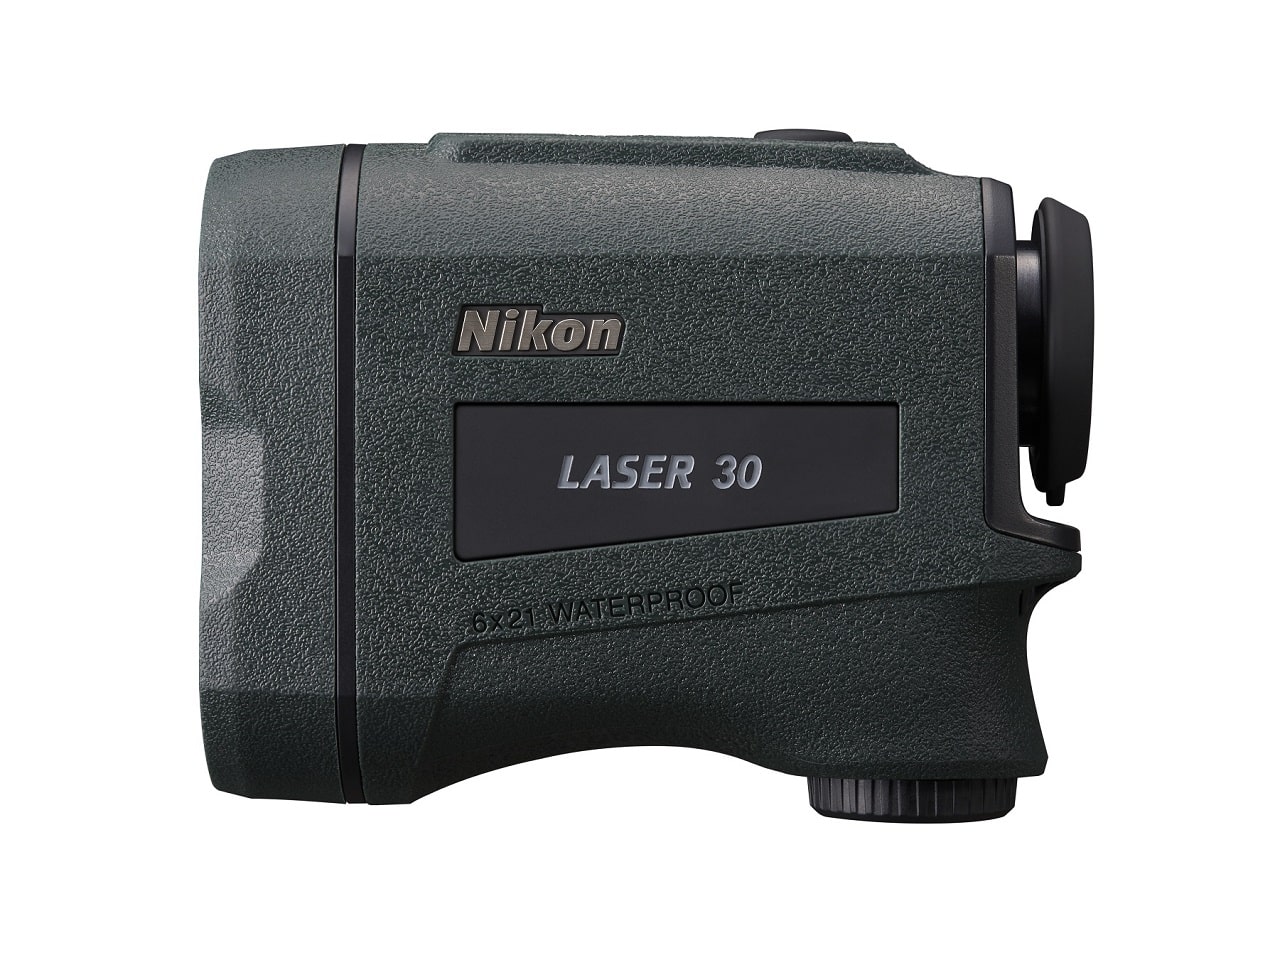 Nikon_LASER_30_right_side-min